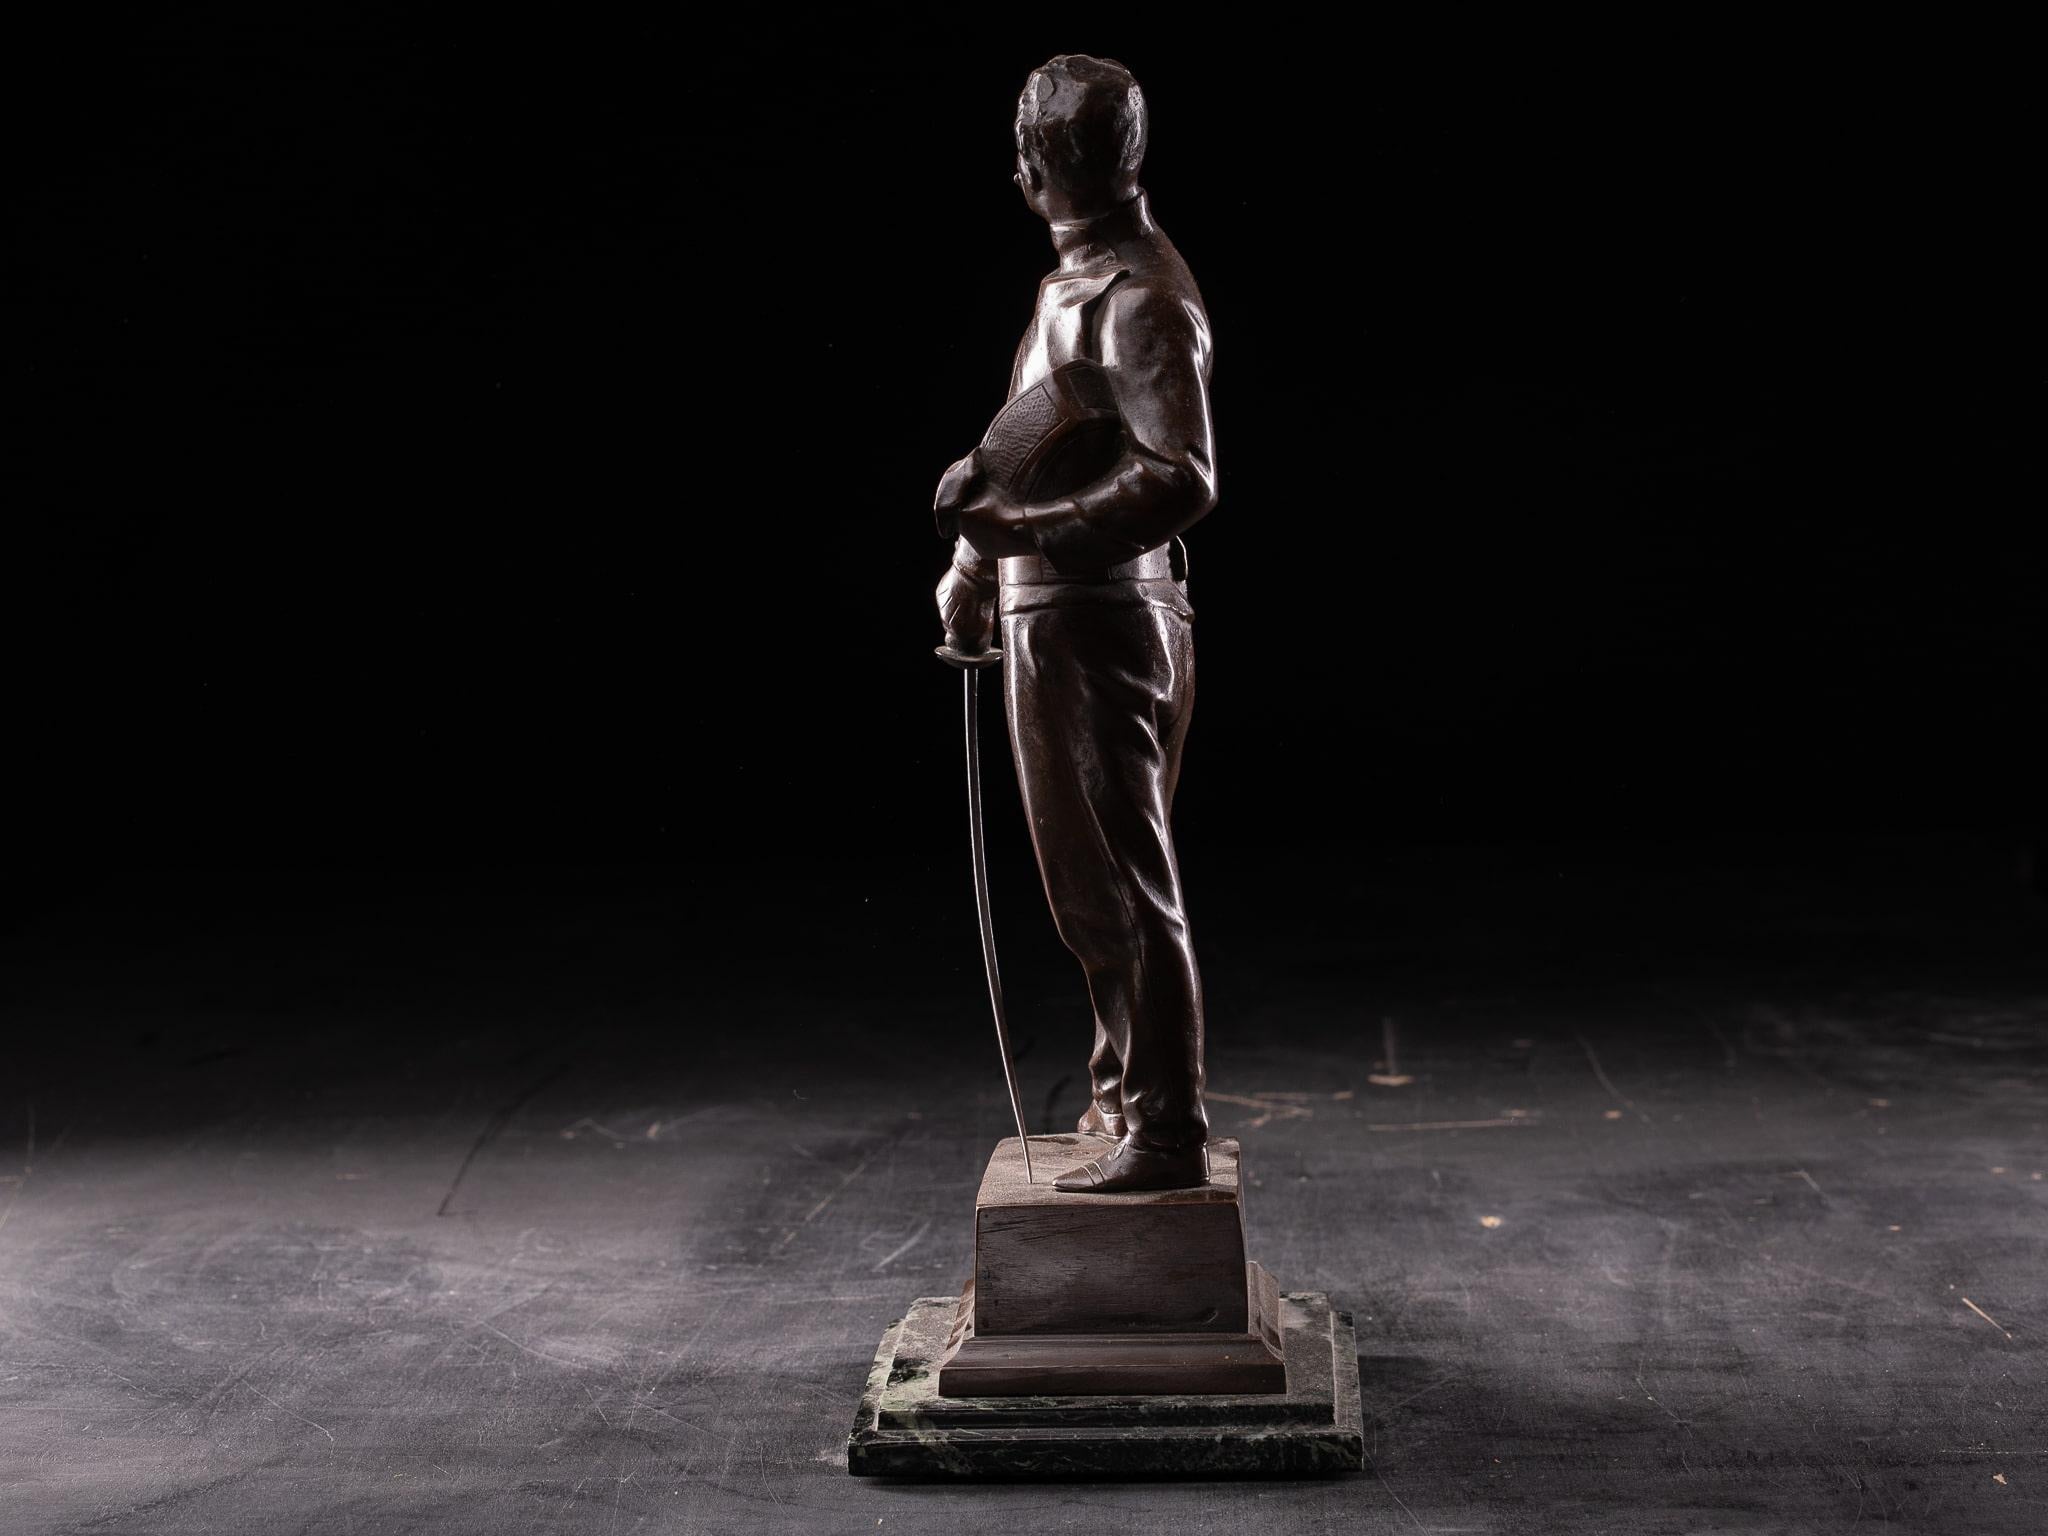 Godefroid Devreese (19. August 1861 - 31. August 1941) war ein belgischer Bildhauer. Sein Werk war Teil der Skulptur im Kunstwettbewerb bei den Olympischen Spielen. Er studierte zunächst bei seinem Vater und setzte dann seine Studien an den